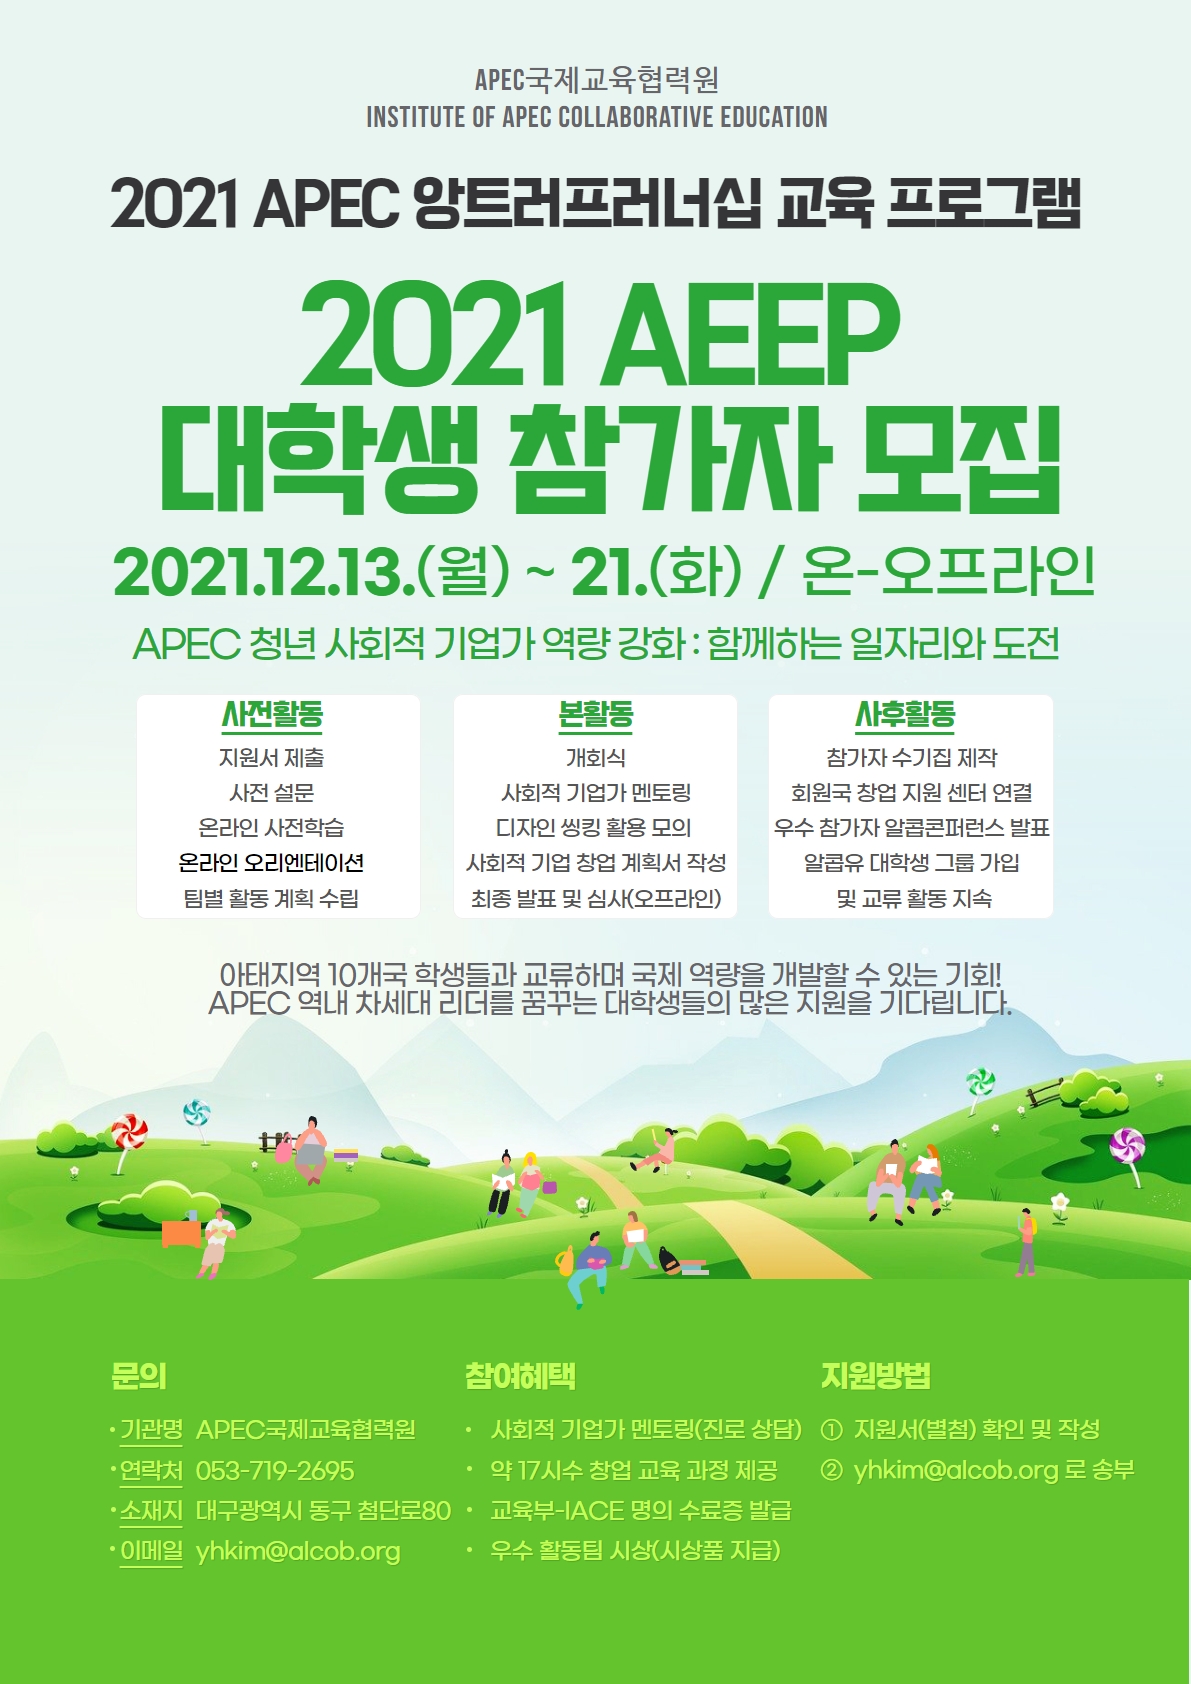 2021년도 APEC 앙트러프러너십 교육프로그램(AEEP)  국내 대학생 참가자 선발 안내